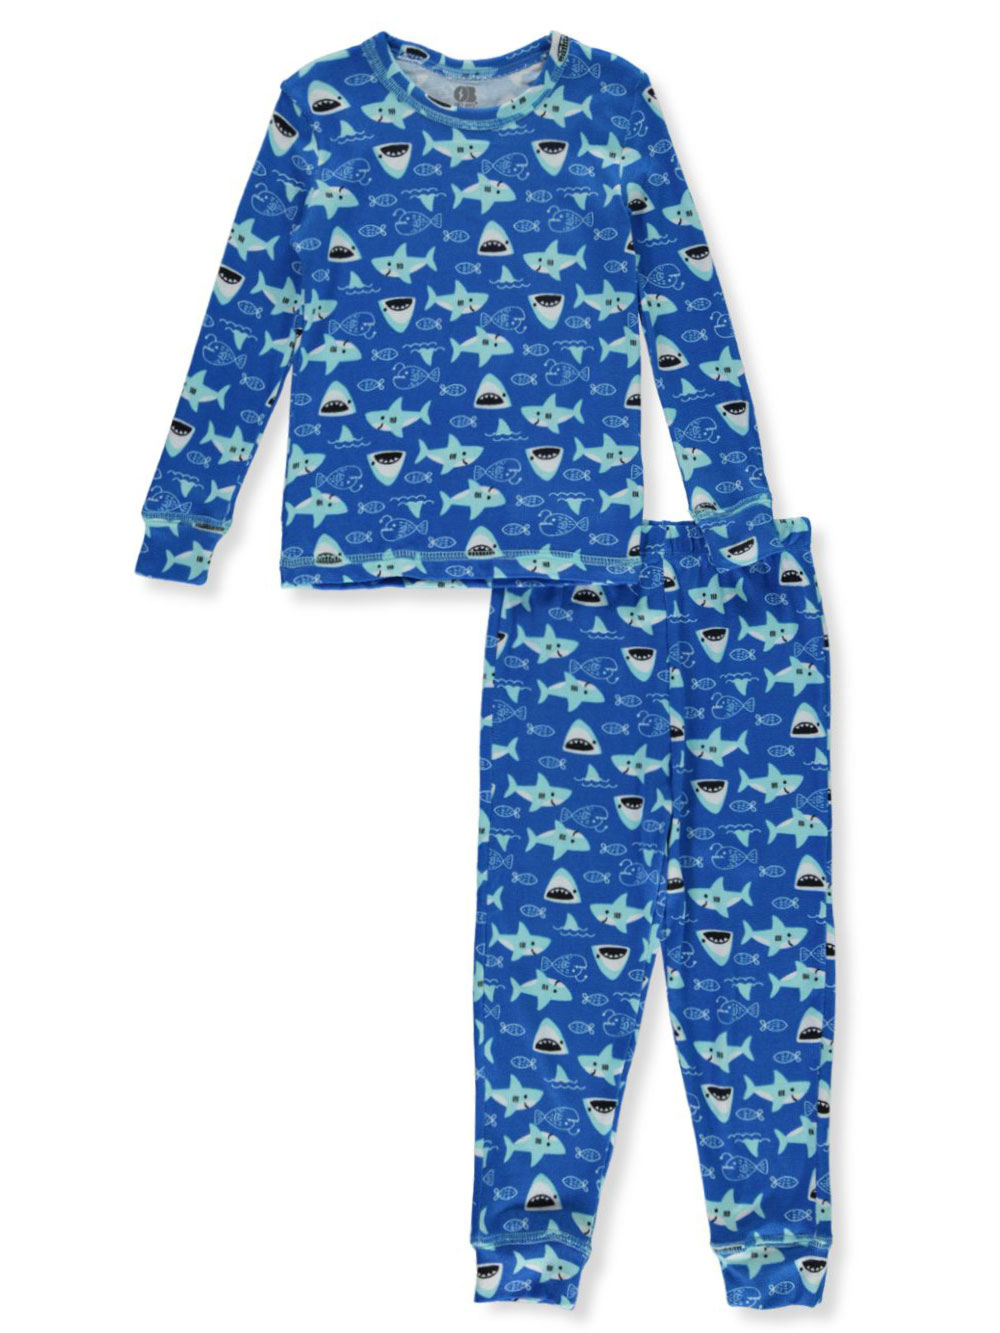 Boys Blue Sleepwear